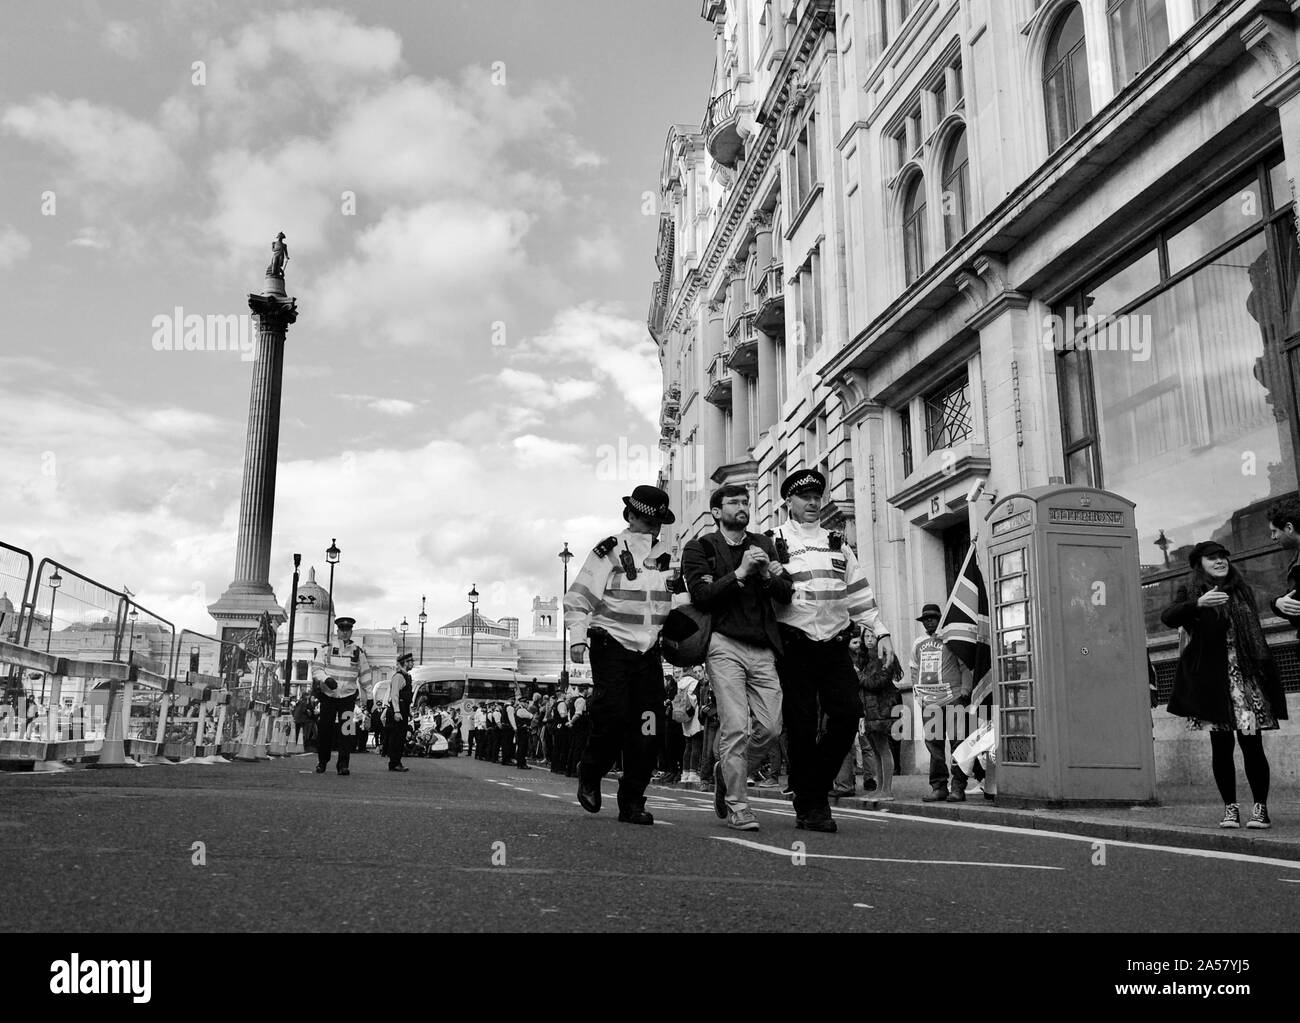 Membre du groupe de protestation climatique rébellion Extinction me faire arrêter à des manifestations à Trafalgar Square à Londres Banque D'Images